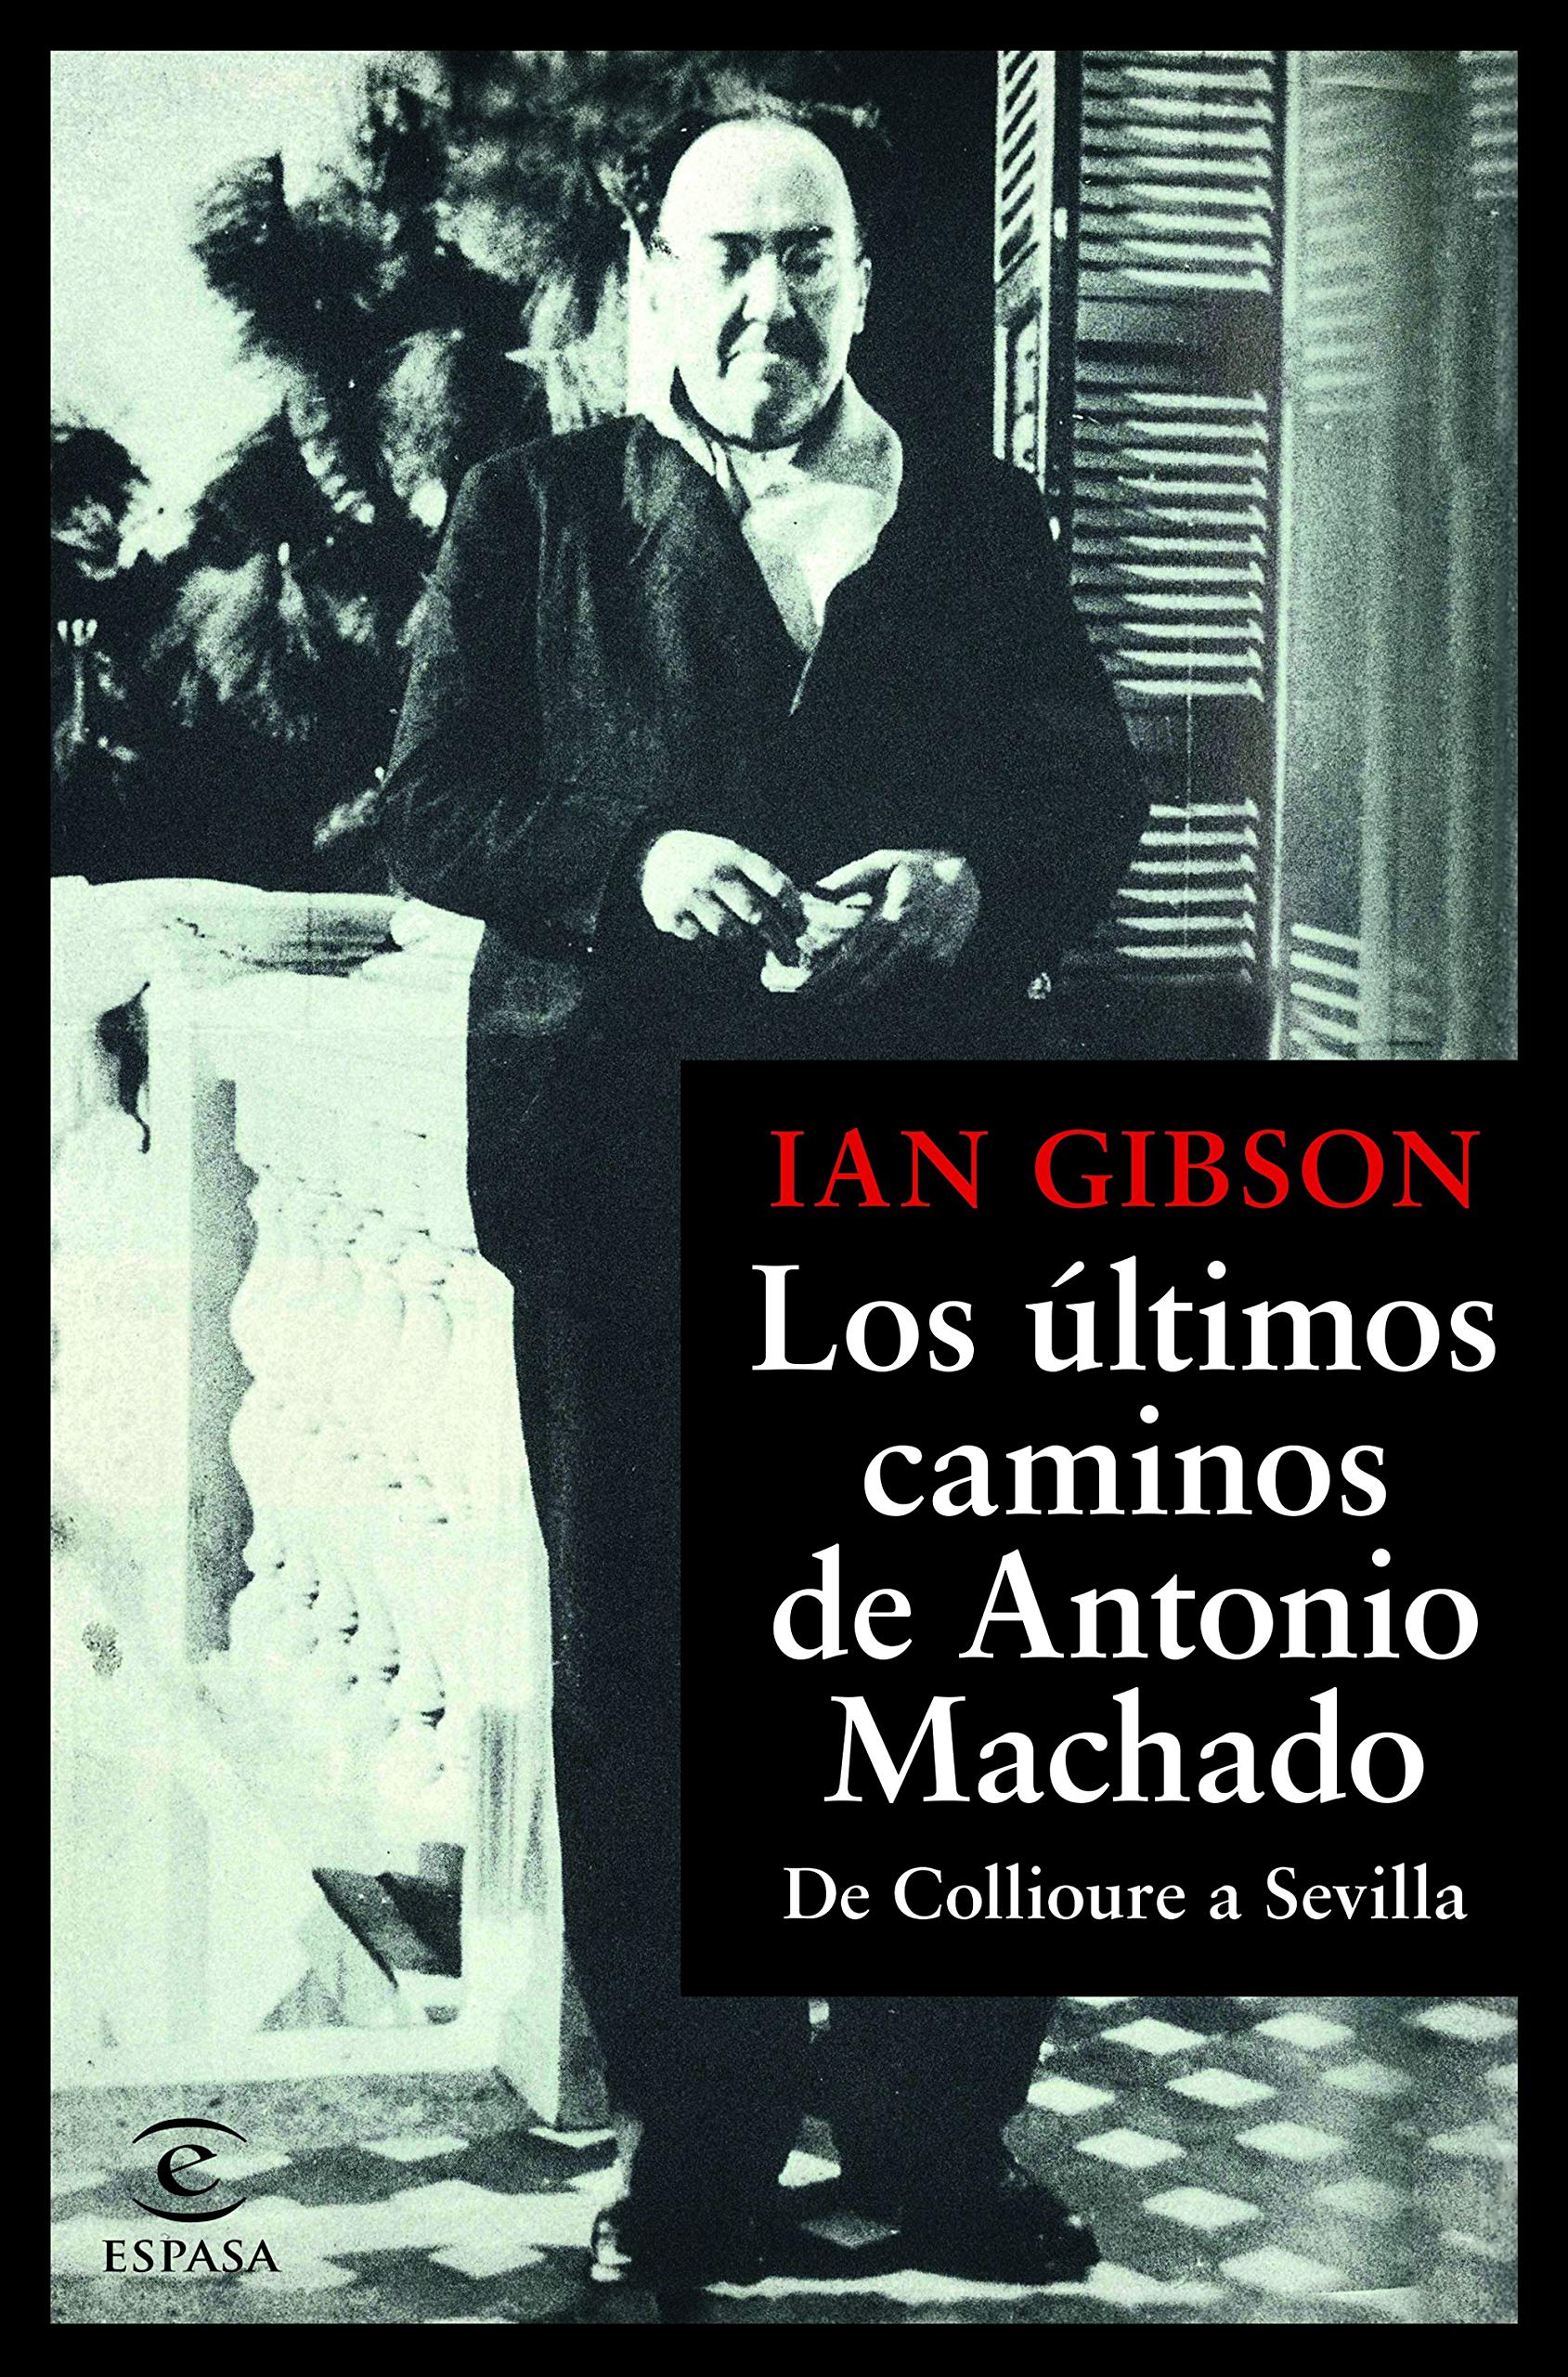 Los últimos caminos de Antonio Machado (Ian Gibson, 2019)